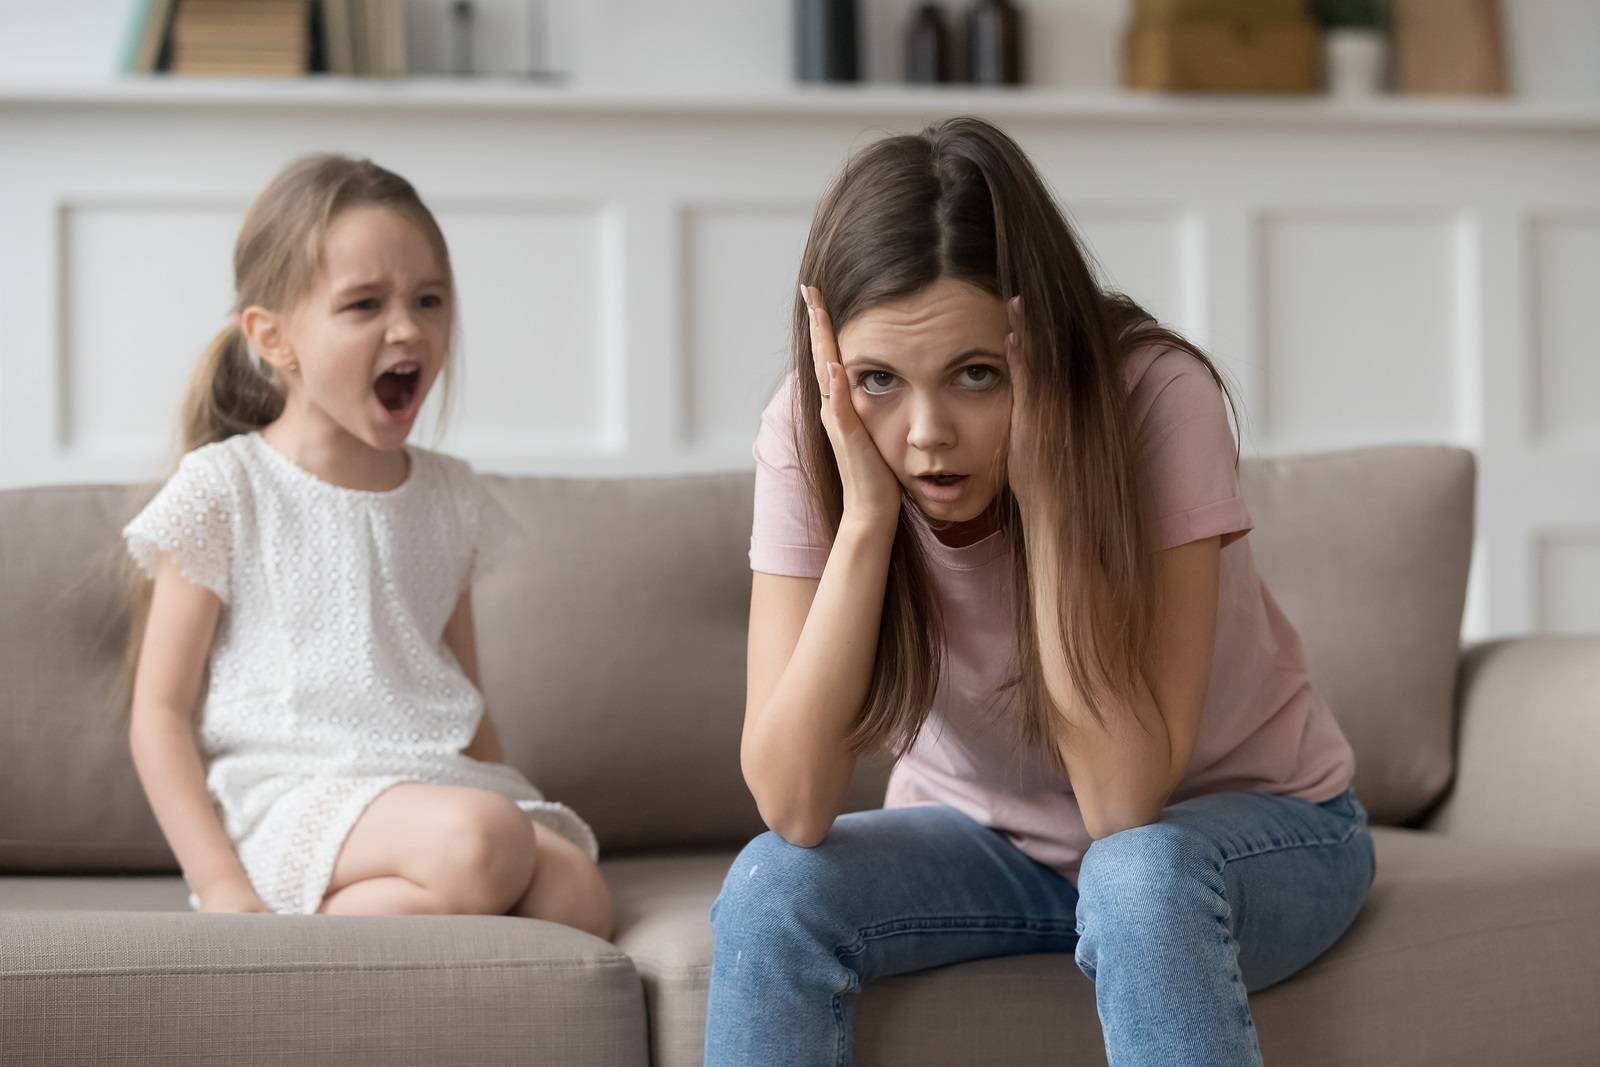 Три фразы, которые помогут успокоить истерику у ребёнка